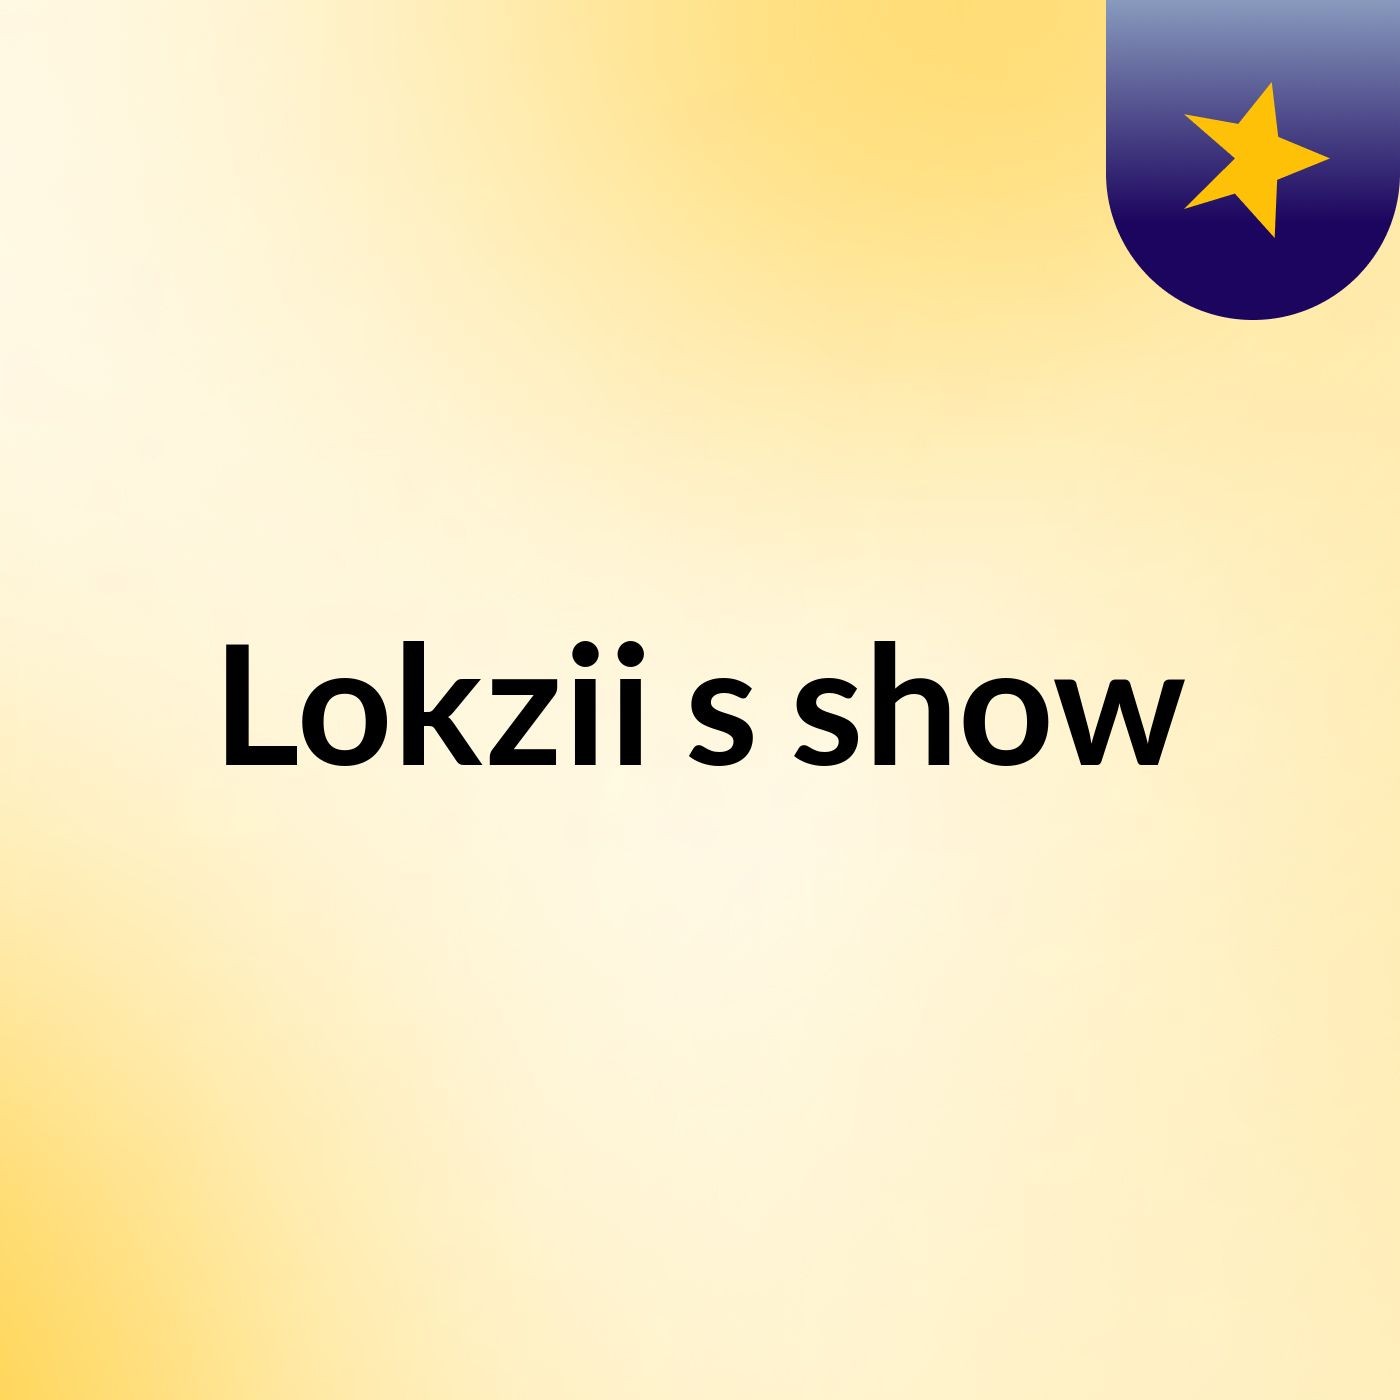 Lokzii's show